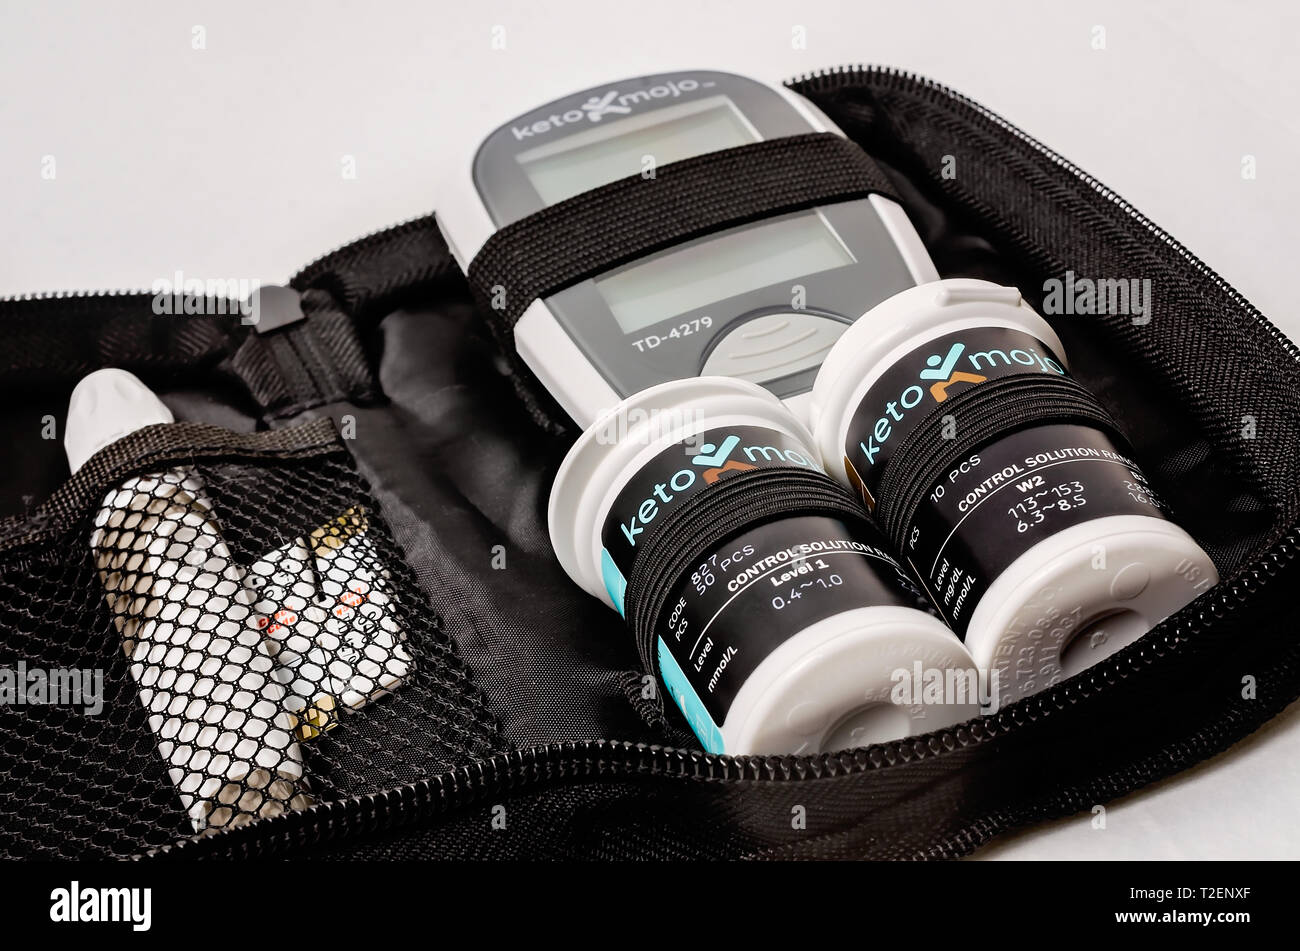 Un Keto-Mojo cétone et kit de surveillance de la glycémie est représenté sur le blanc, avec le mètre, cétone et glucose test strips, et The Lancet. Banque D'Images